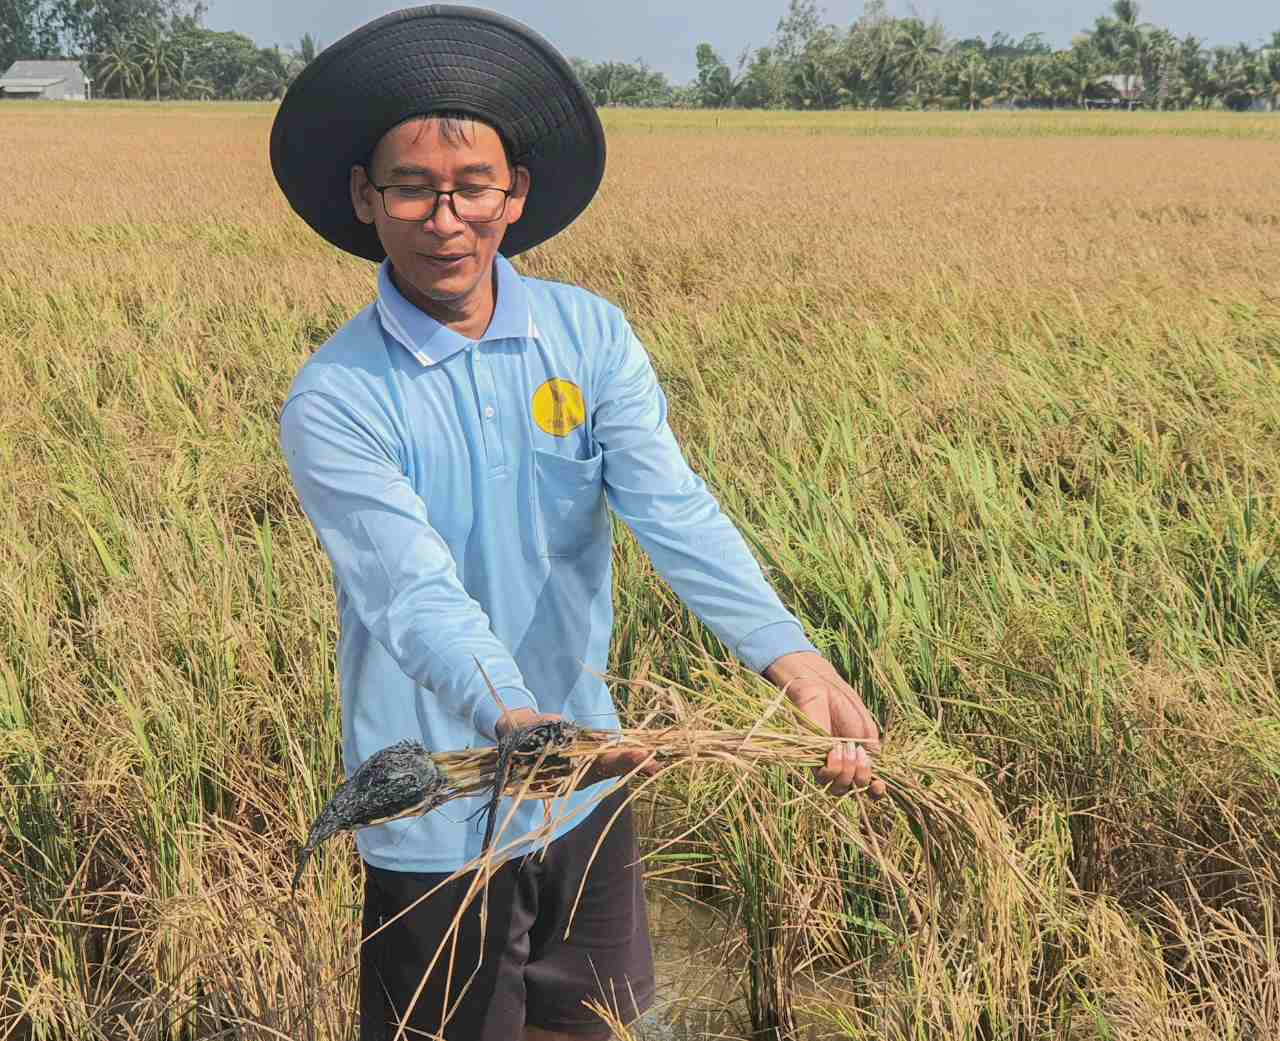 Nông dân huyện Trần Đề, tỉnh Sóc Trăng nhổ cây lúa bị nhiễm mặn nặng nề, toàn vụ mùa Đông Xuân muộn giảm năng suất từ 50%-70%.